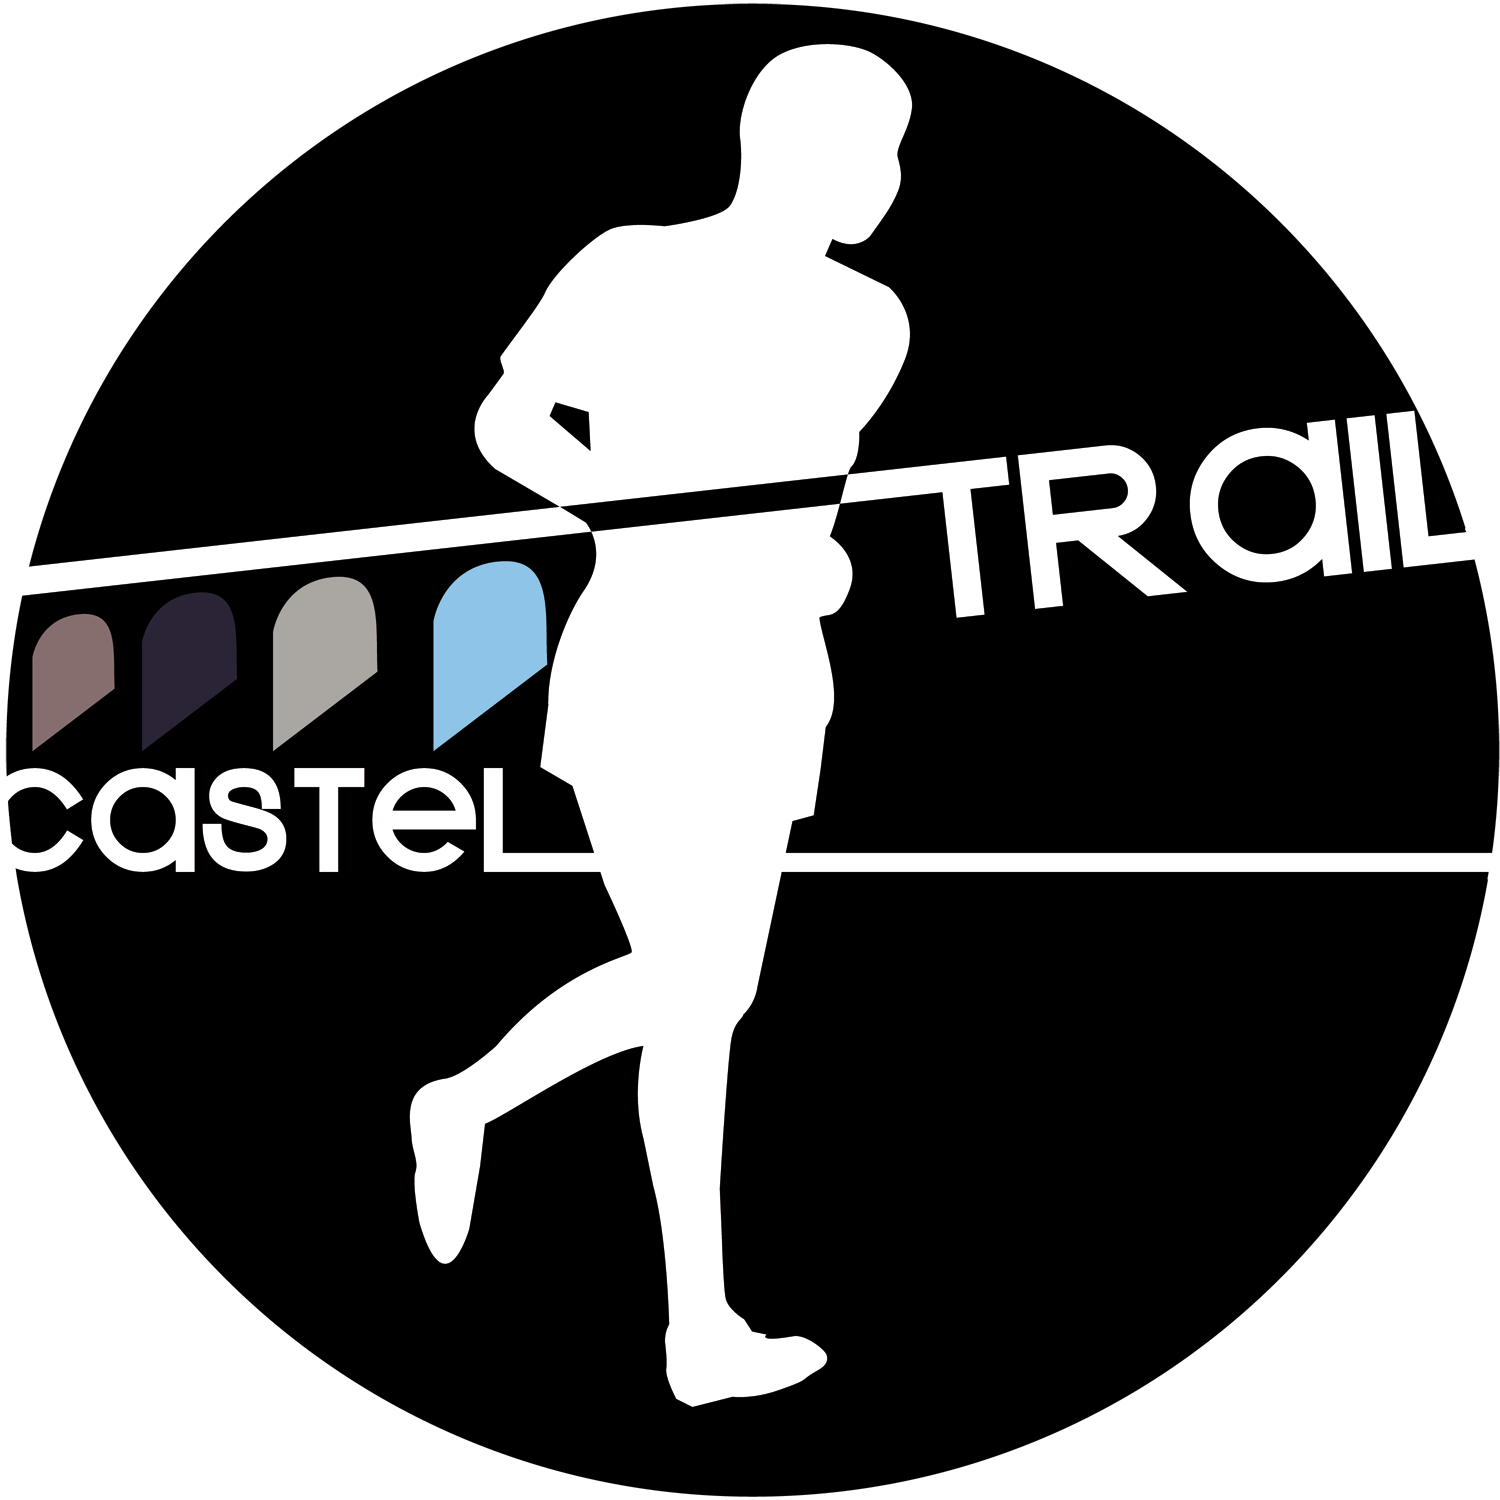 Castel Trail